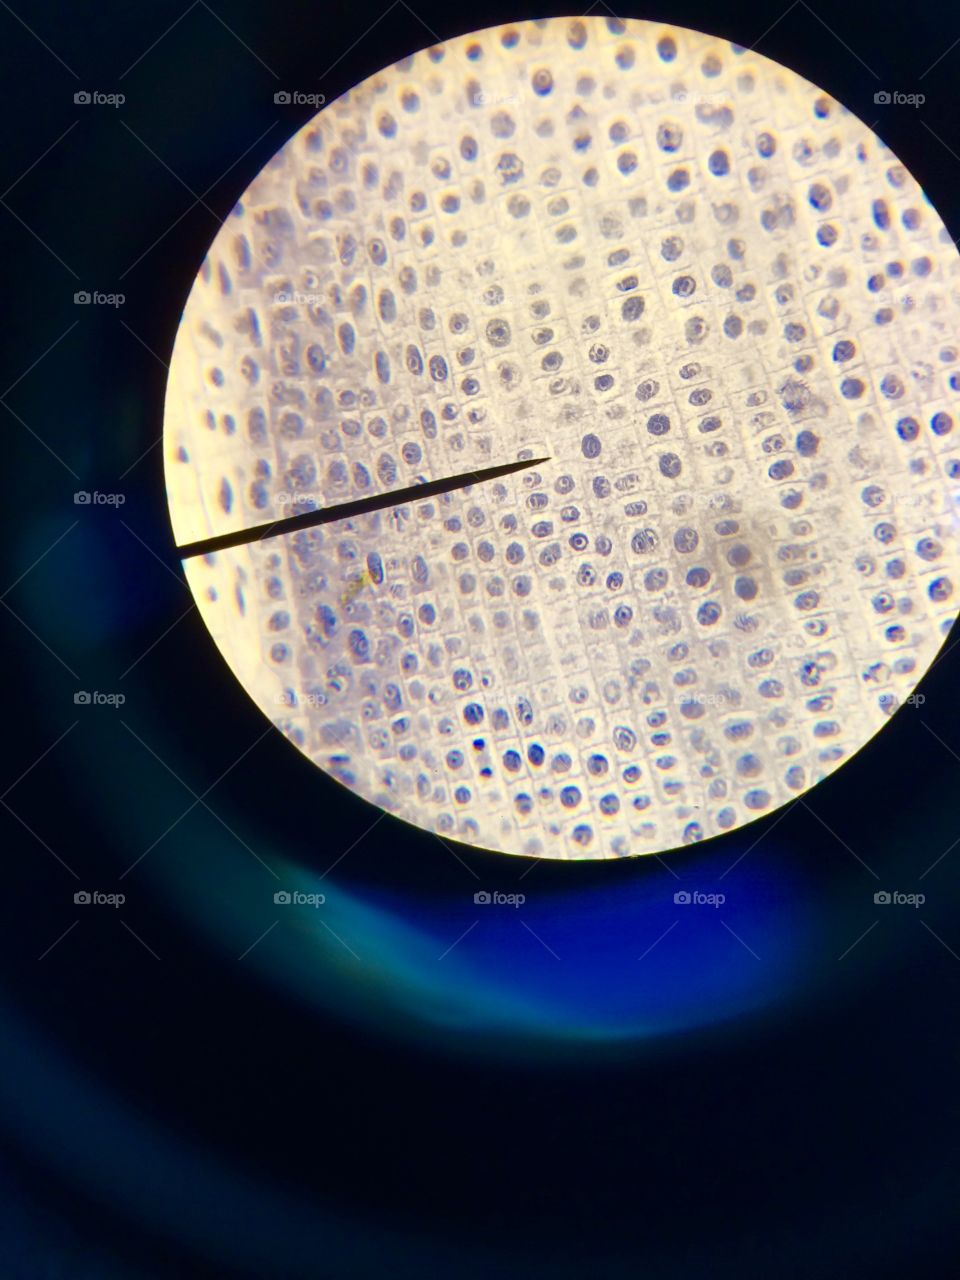 Cells through a microscope 